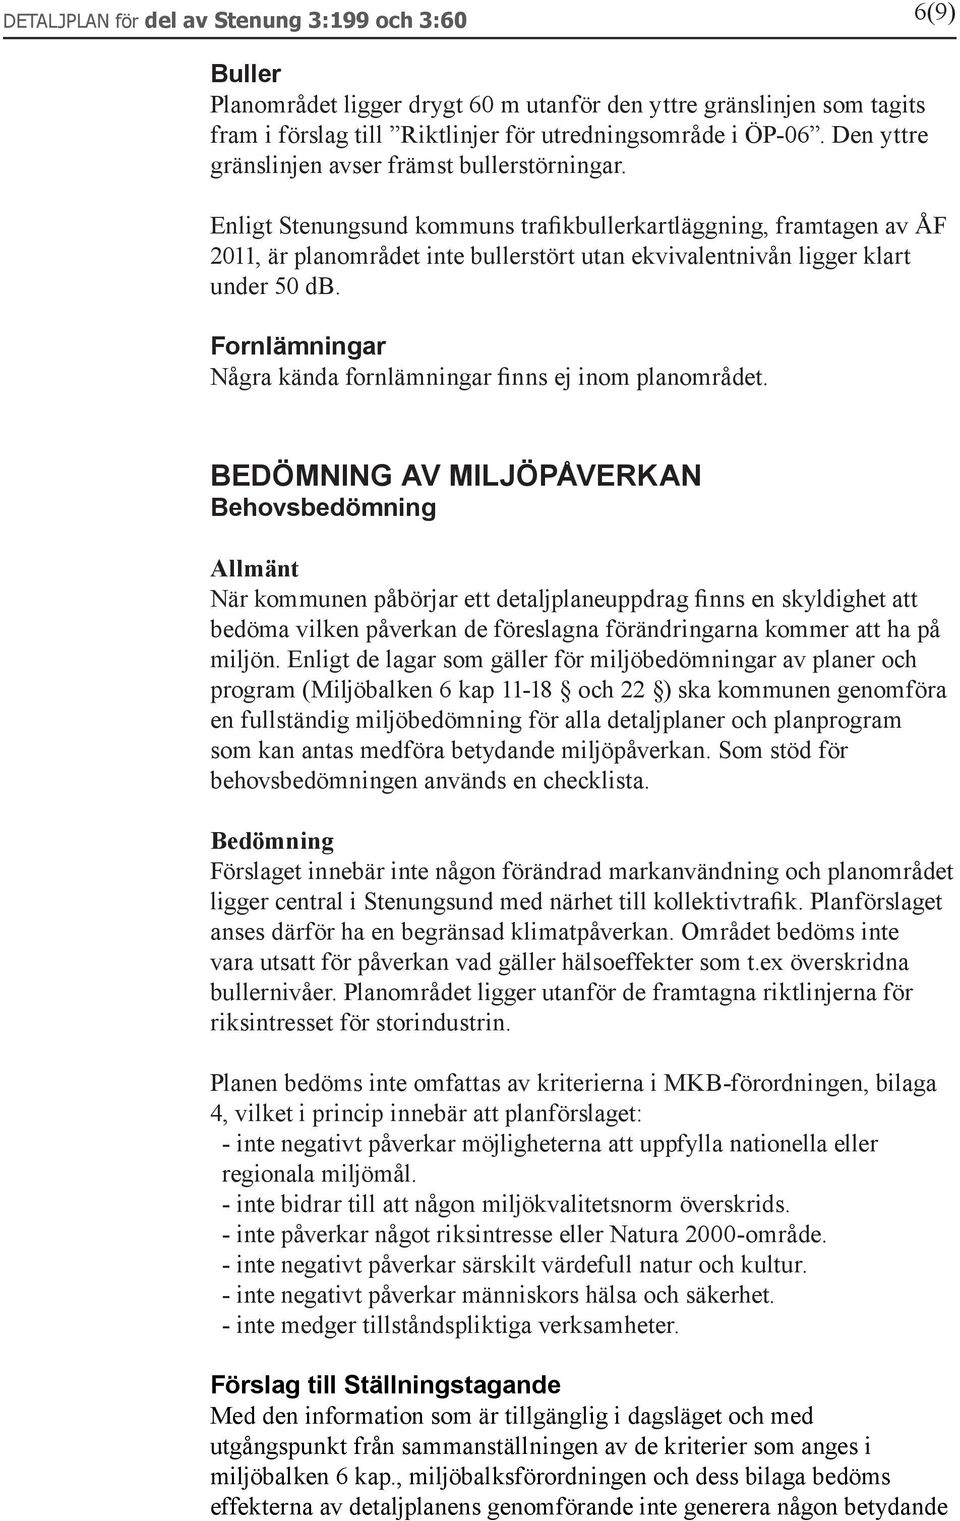 Enligt Stenungsund kommuns trafikbullerkartläggning, framtagen av ÅF 2011, är planområdet inte bullerstört utan ekvivalentnivån ligger klart under 50 db.